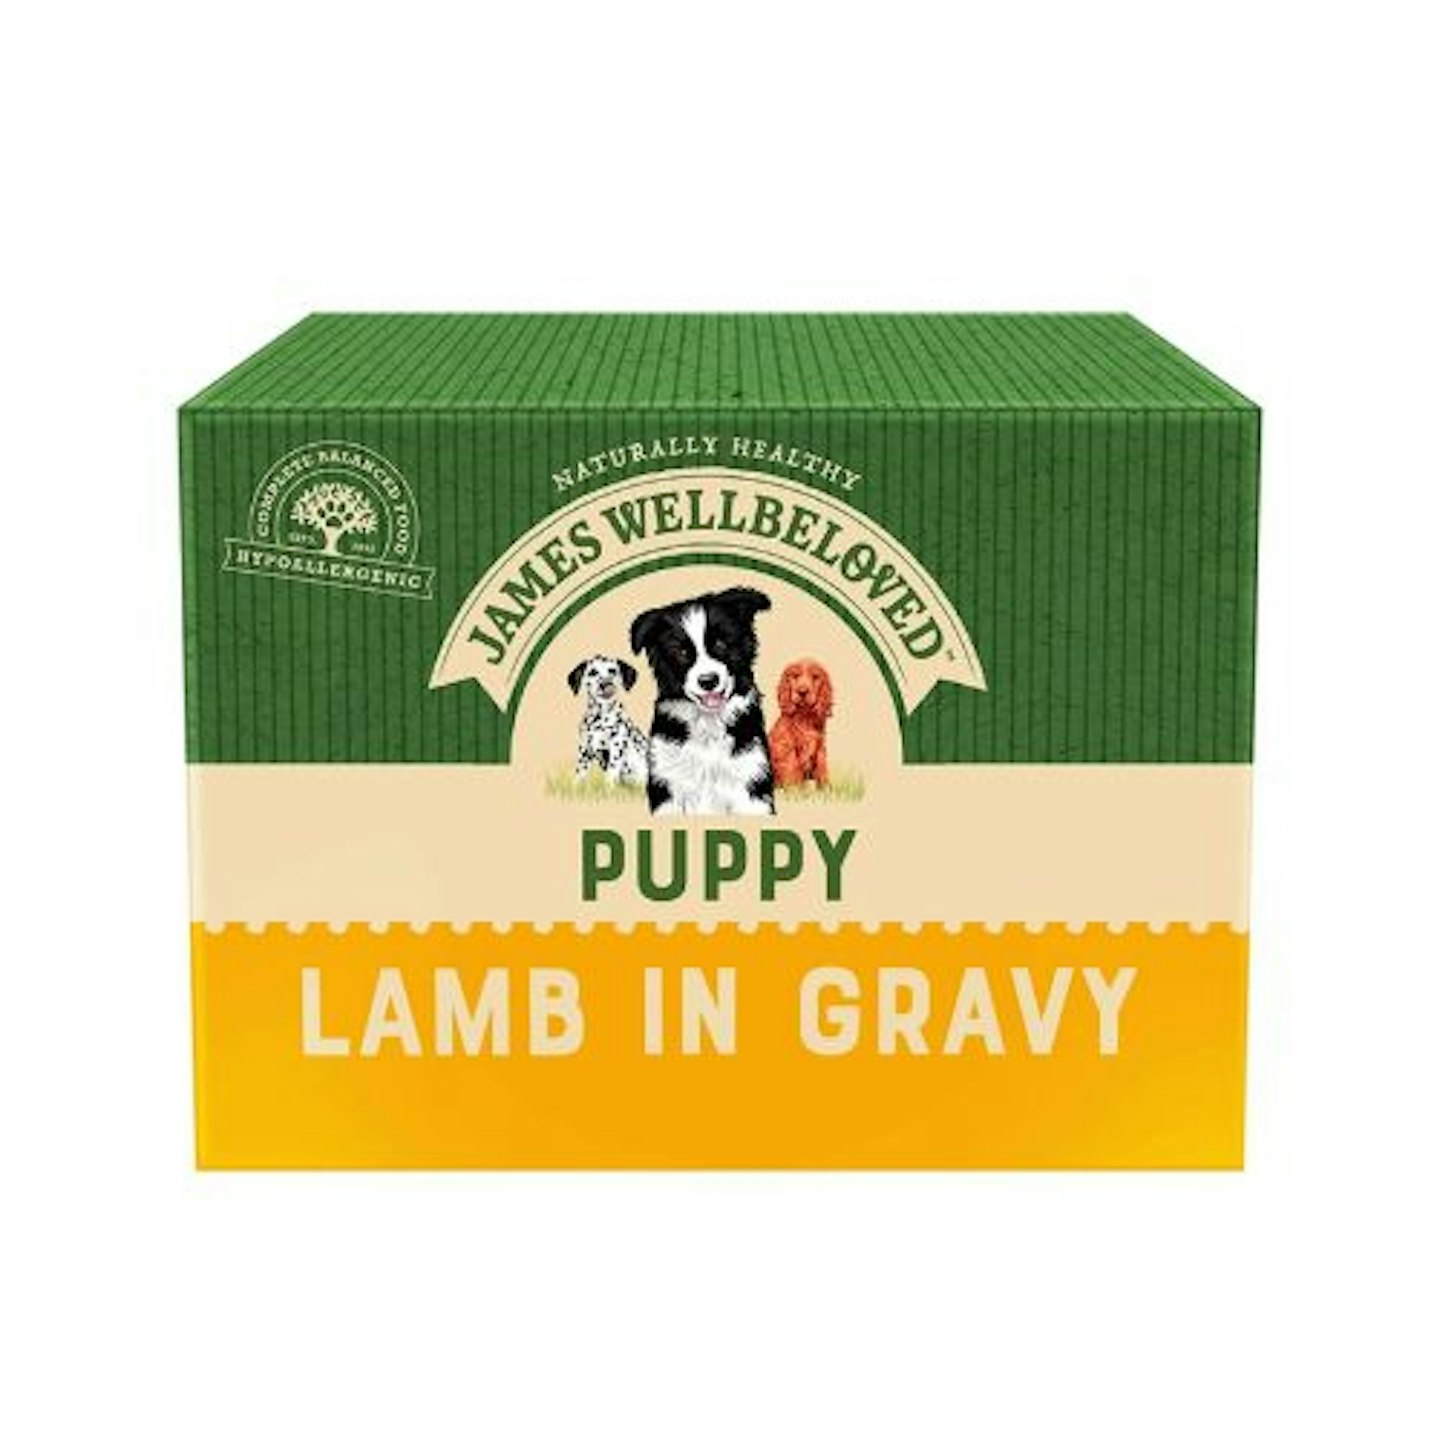 James Wellbeloved Puppy Lamb in Gravy 10 Pouches